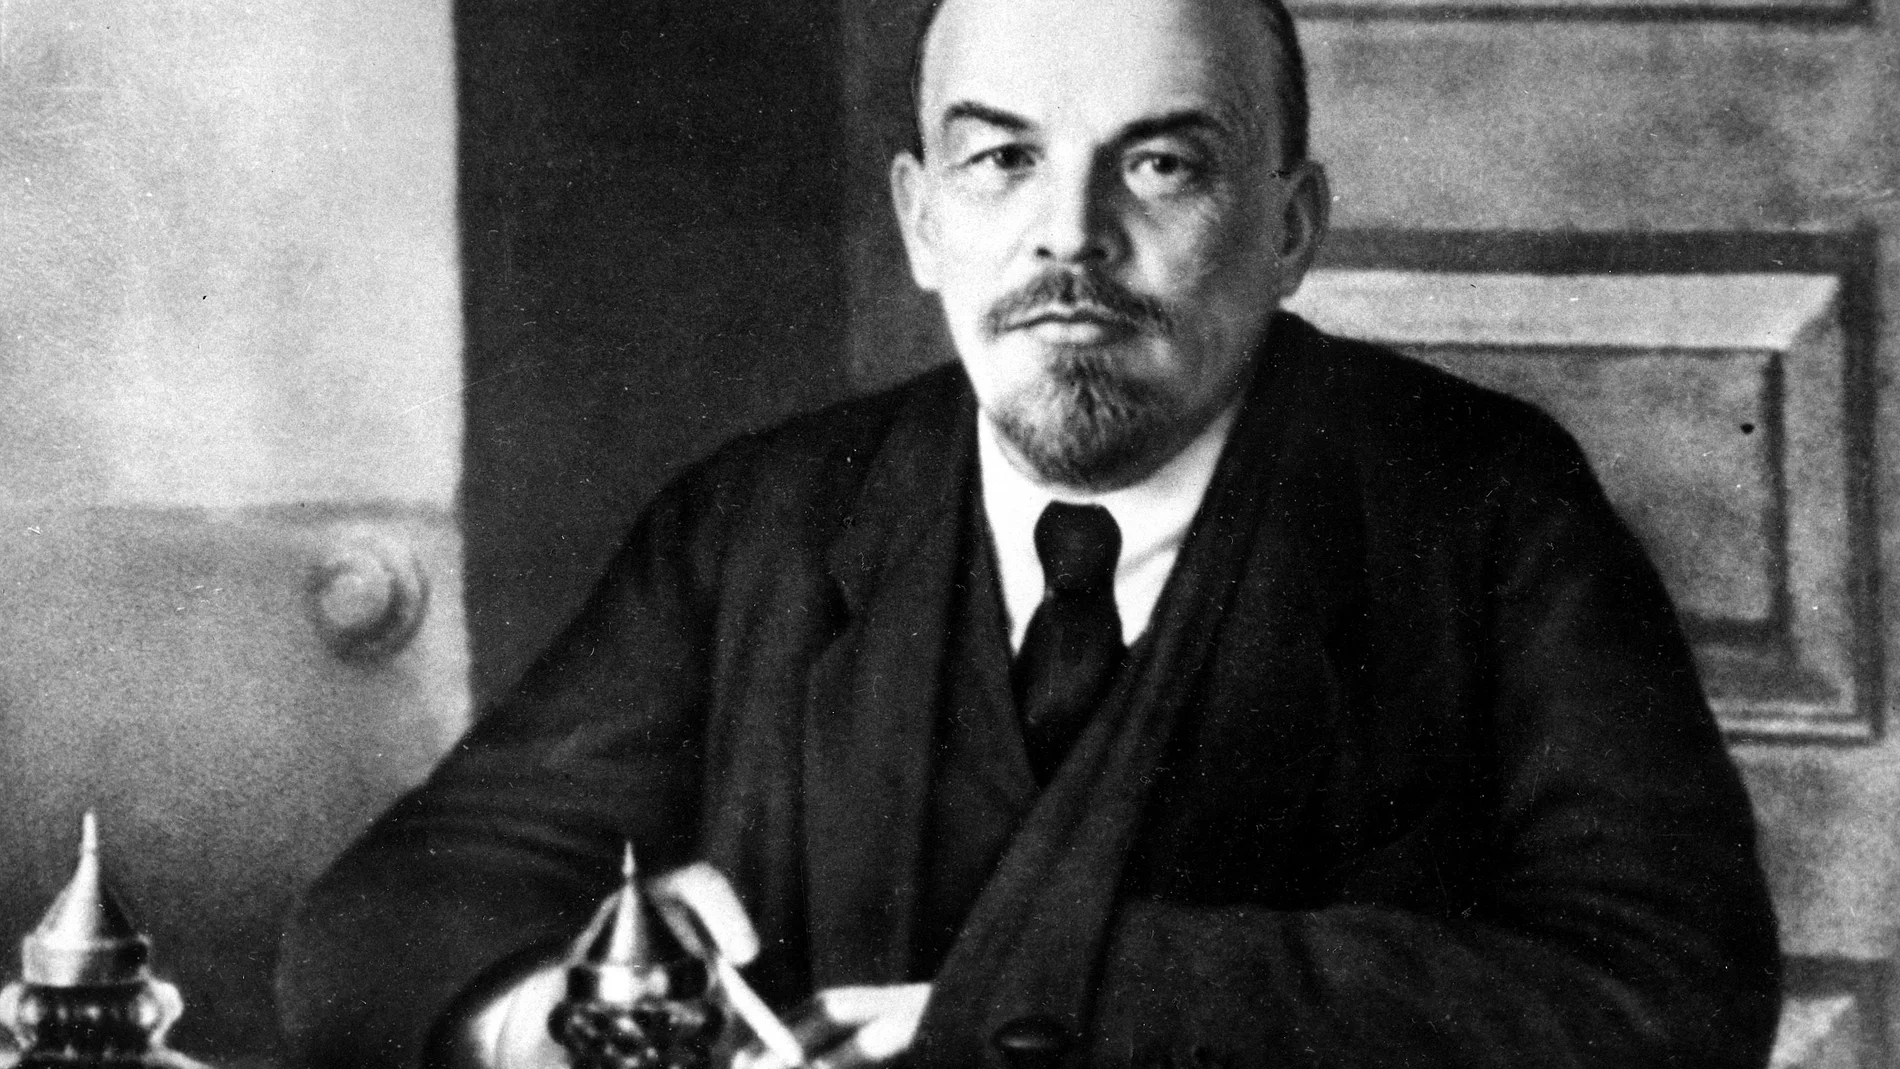 El estrés (o quizás un veneno) mataron a Lenin